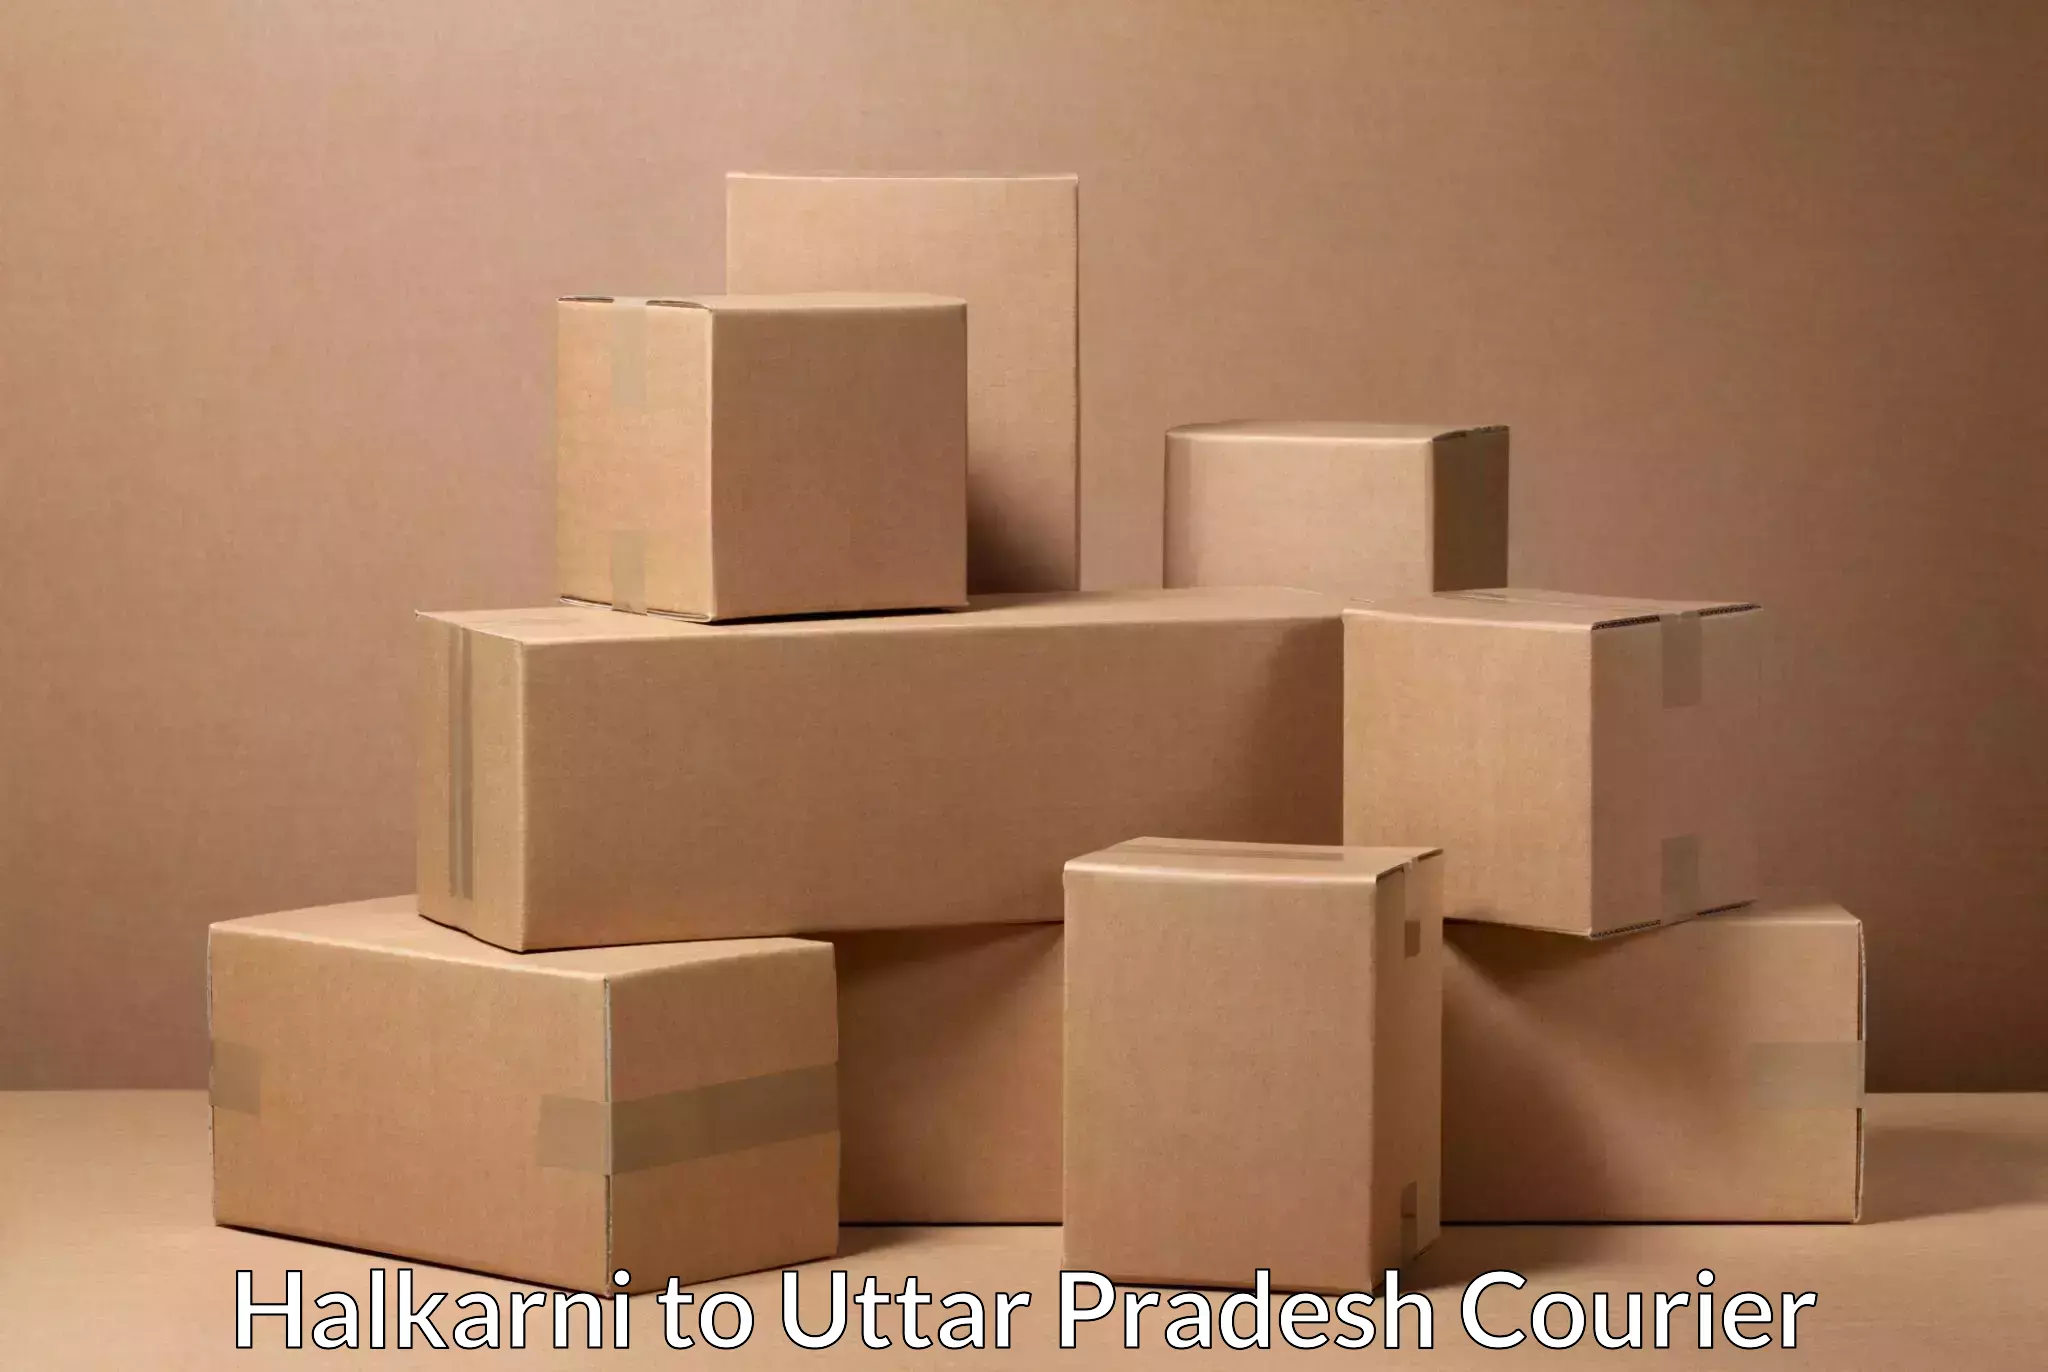 Efficient parcel delivery Halkarni to Afzalgarh